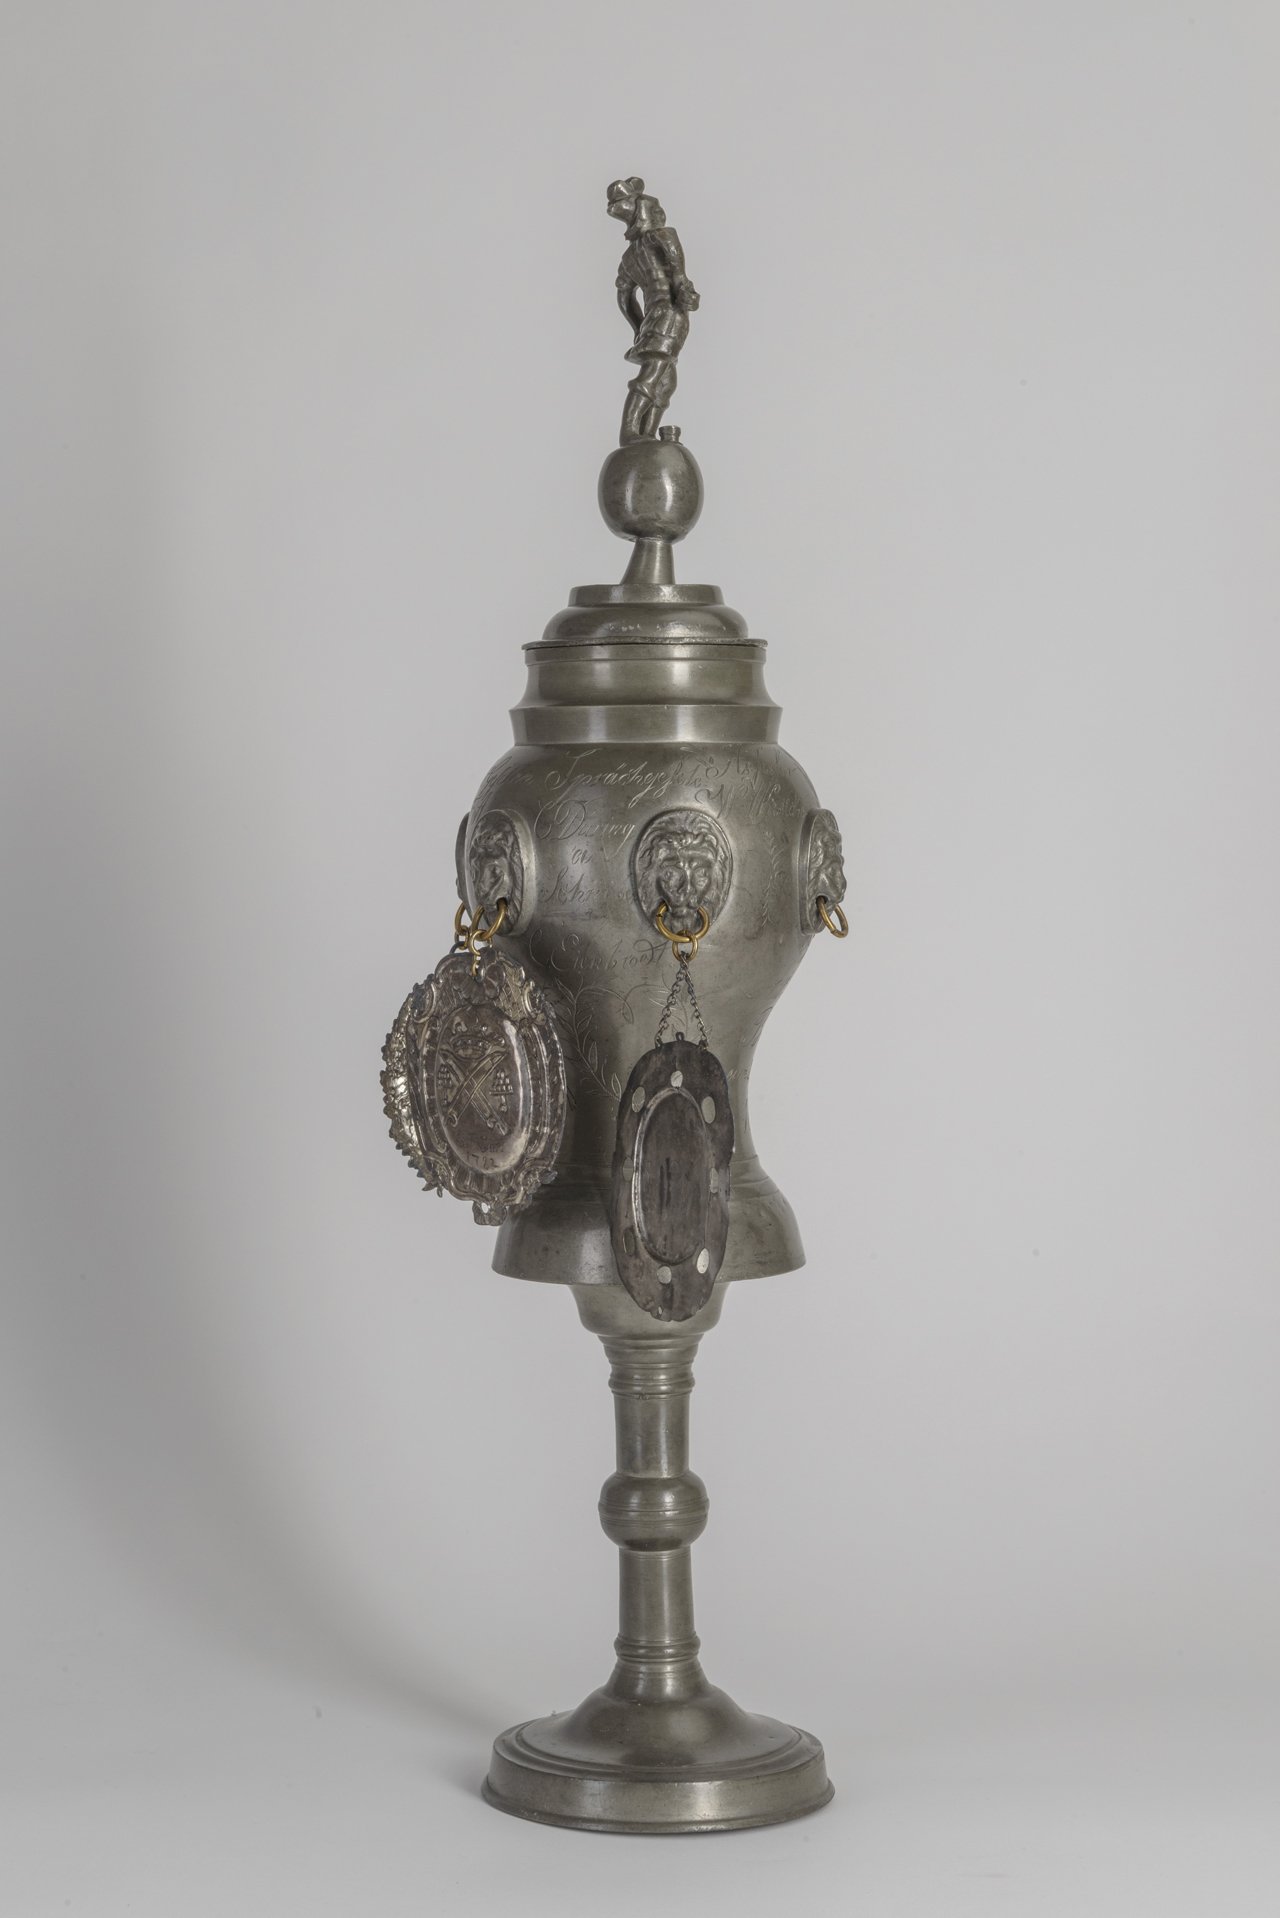 Willkomm-Pokal der Tuchmacher, 1836 (Stadtmuseum Brandenburg an der Havel CC BY-NC-SA)